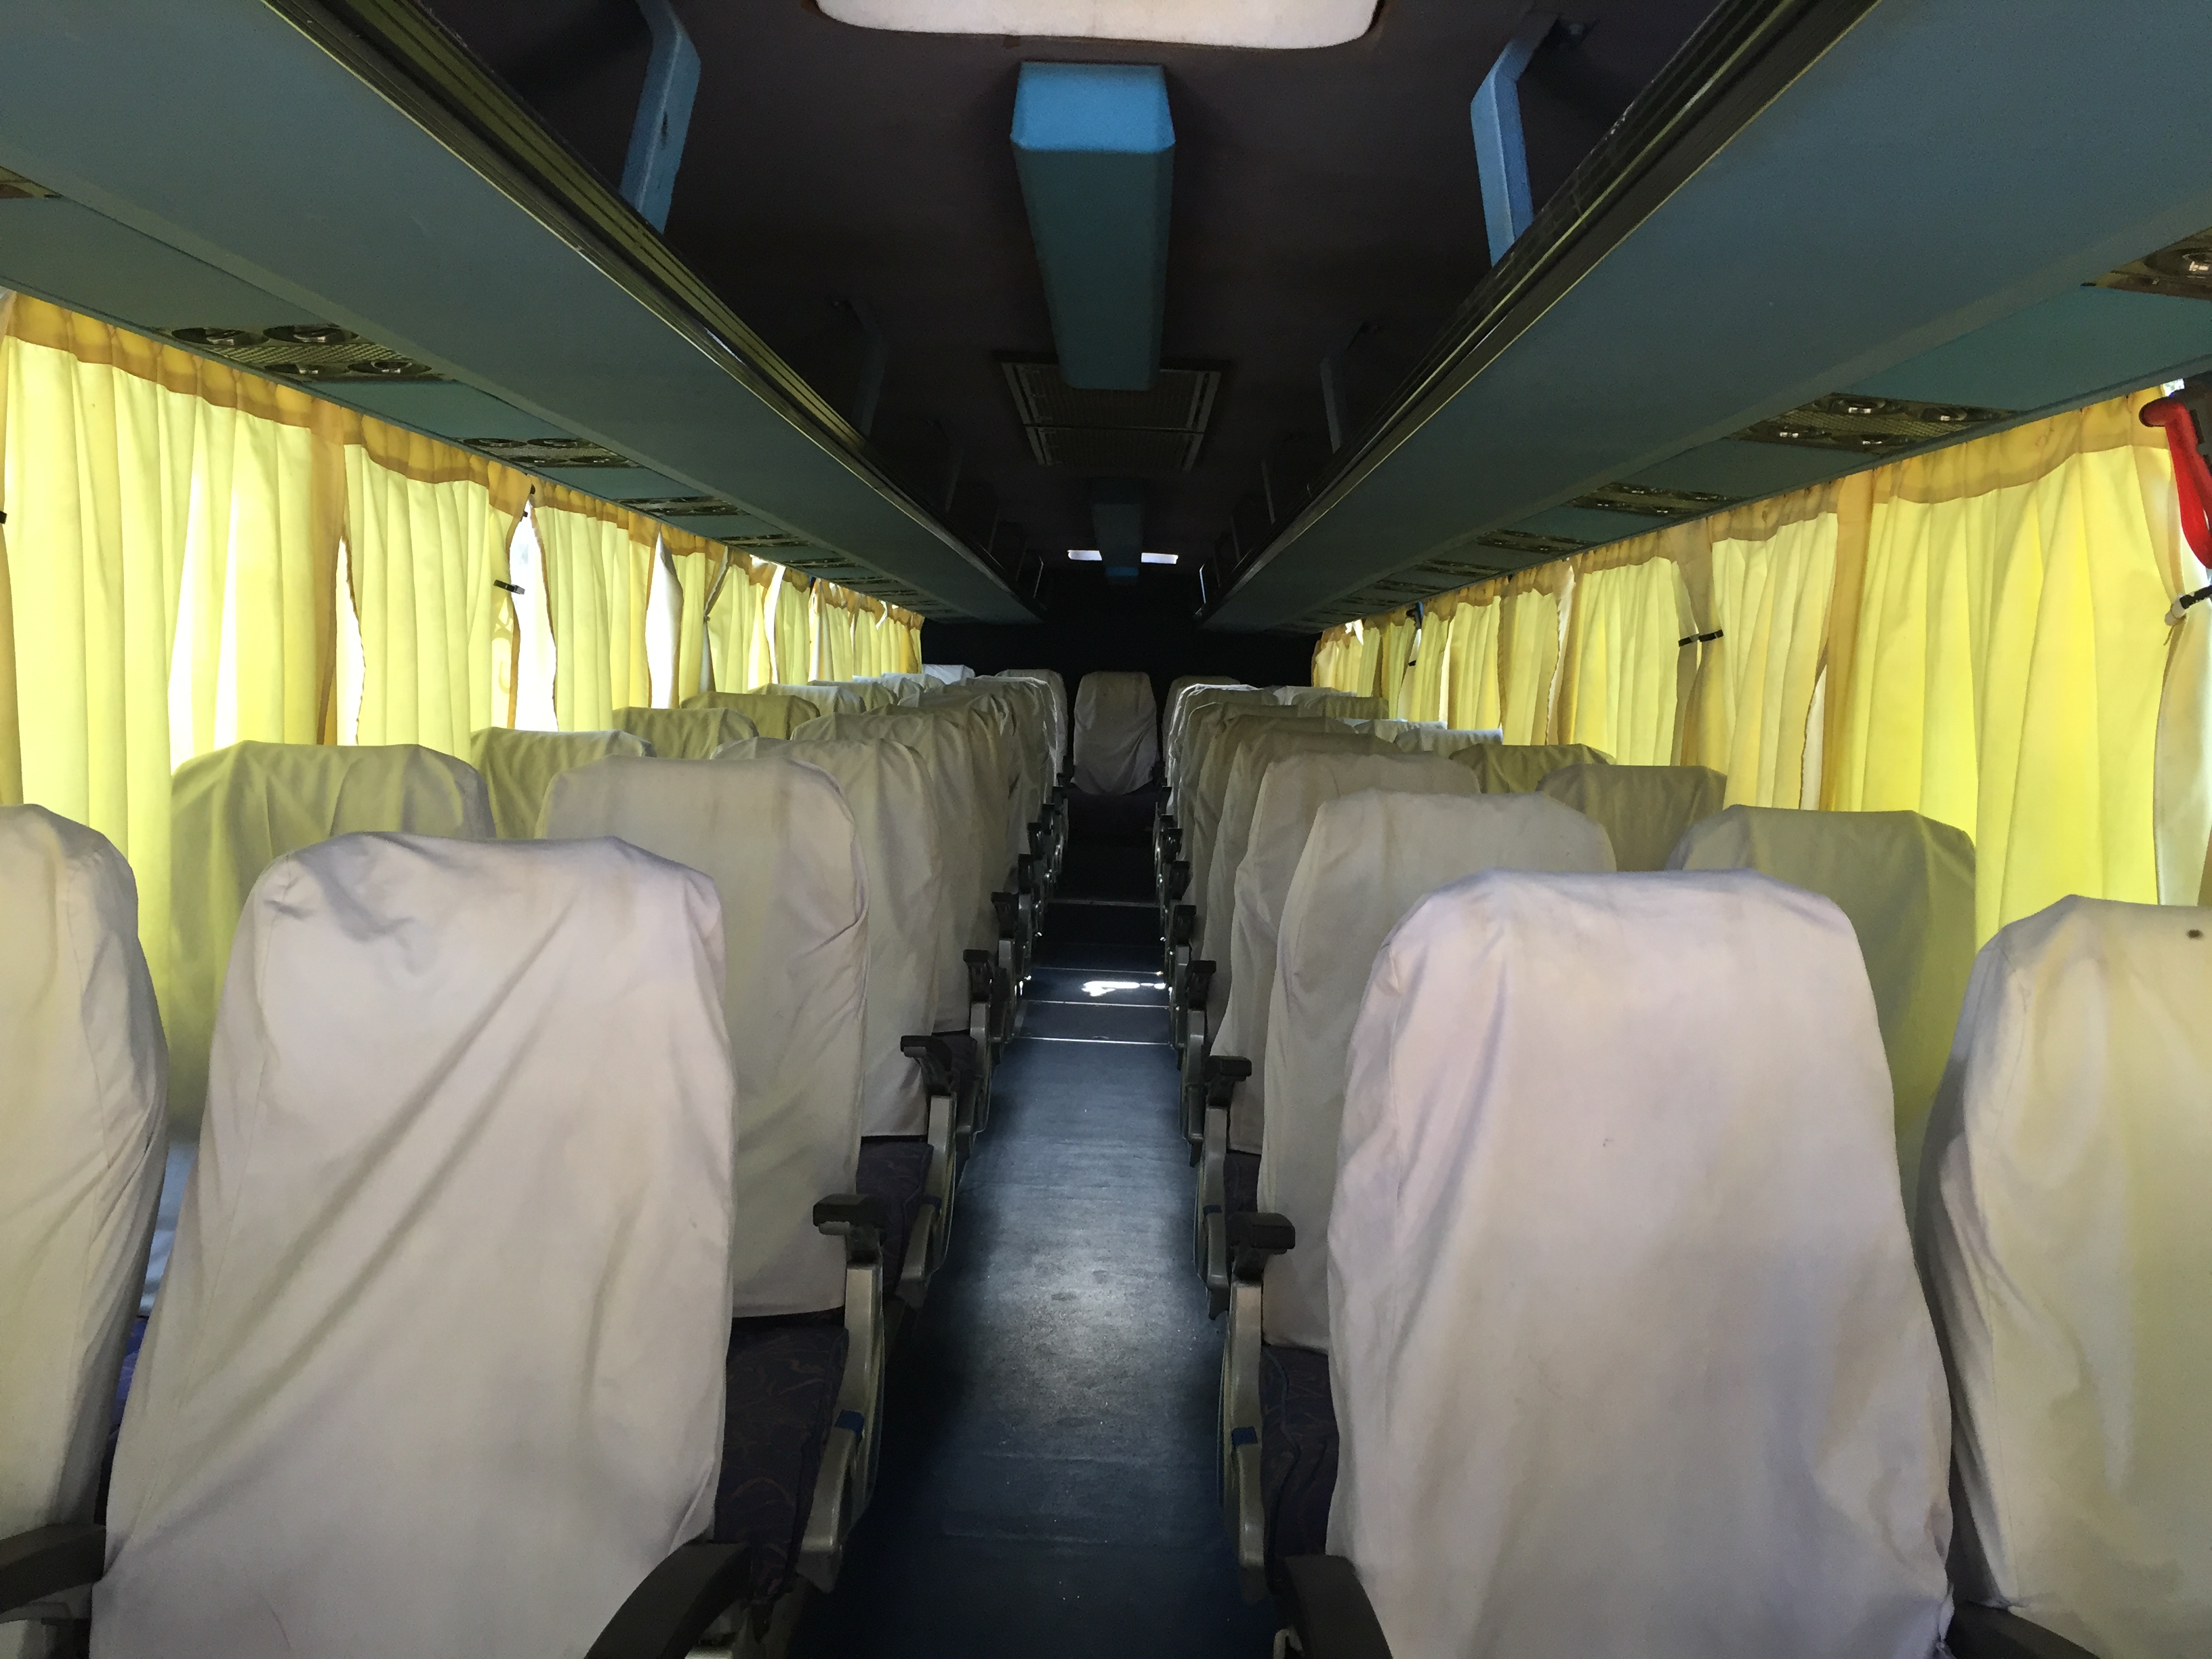 45 Seater AC Volvo Bus - Bhubaneswar Cab Rental